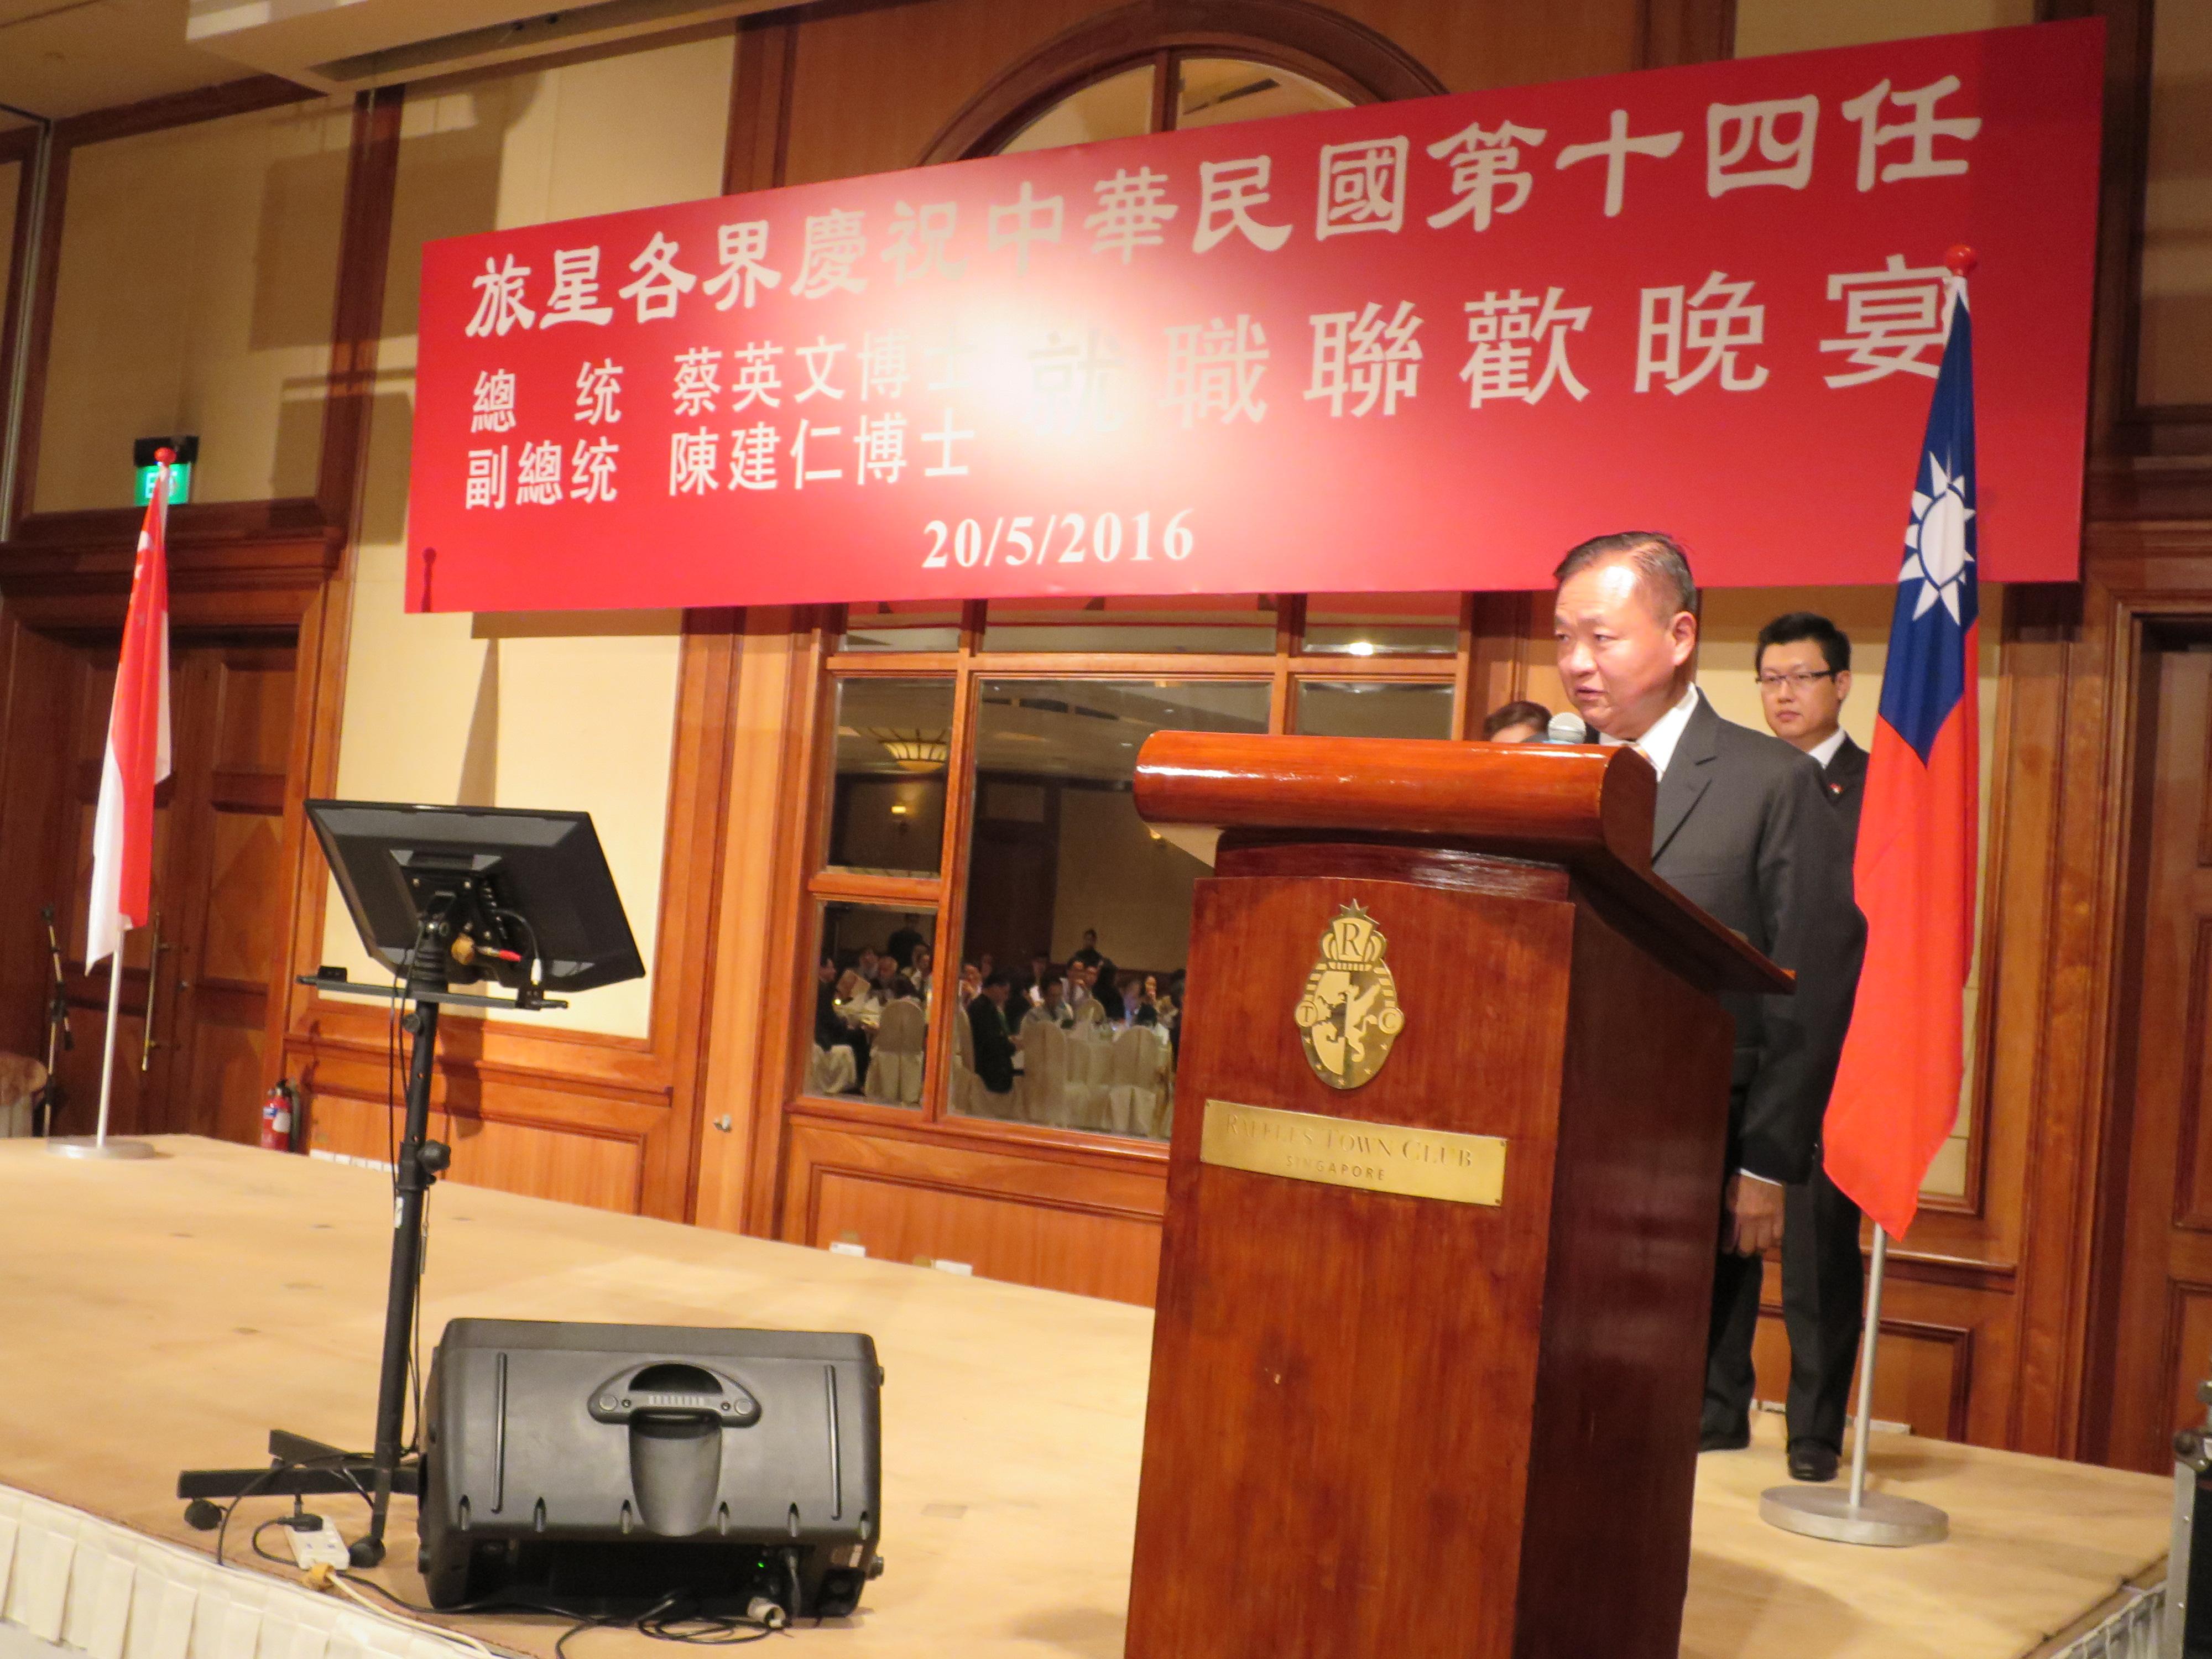 本處張大使大同於「旅星各界慶祝中華民國第十四任總統暨副總統就職聯歡晚宴」致詞。